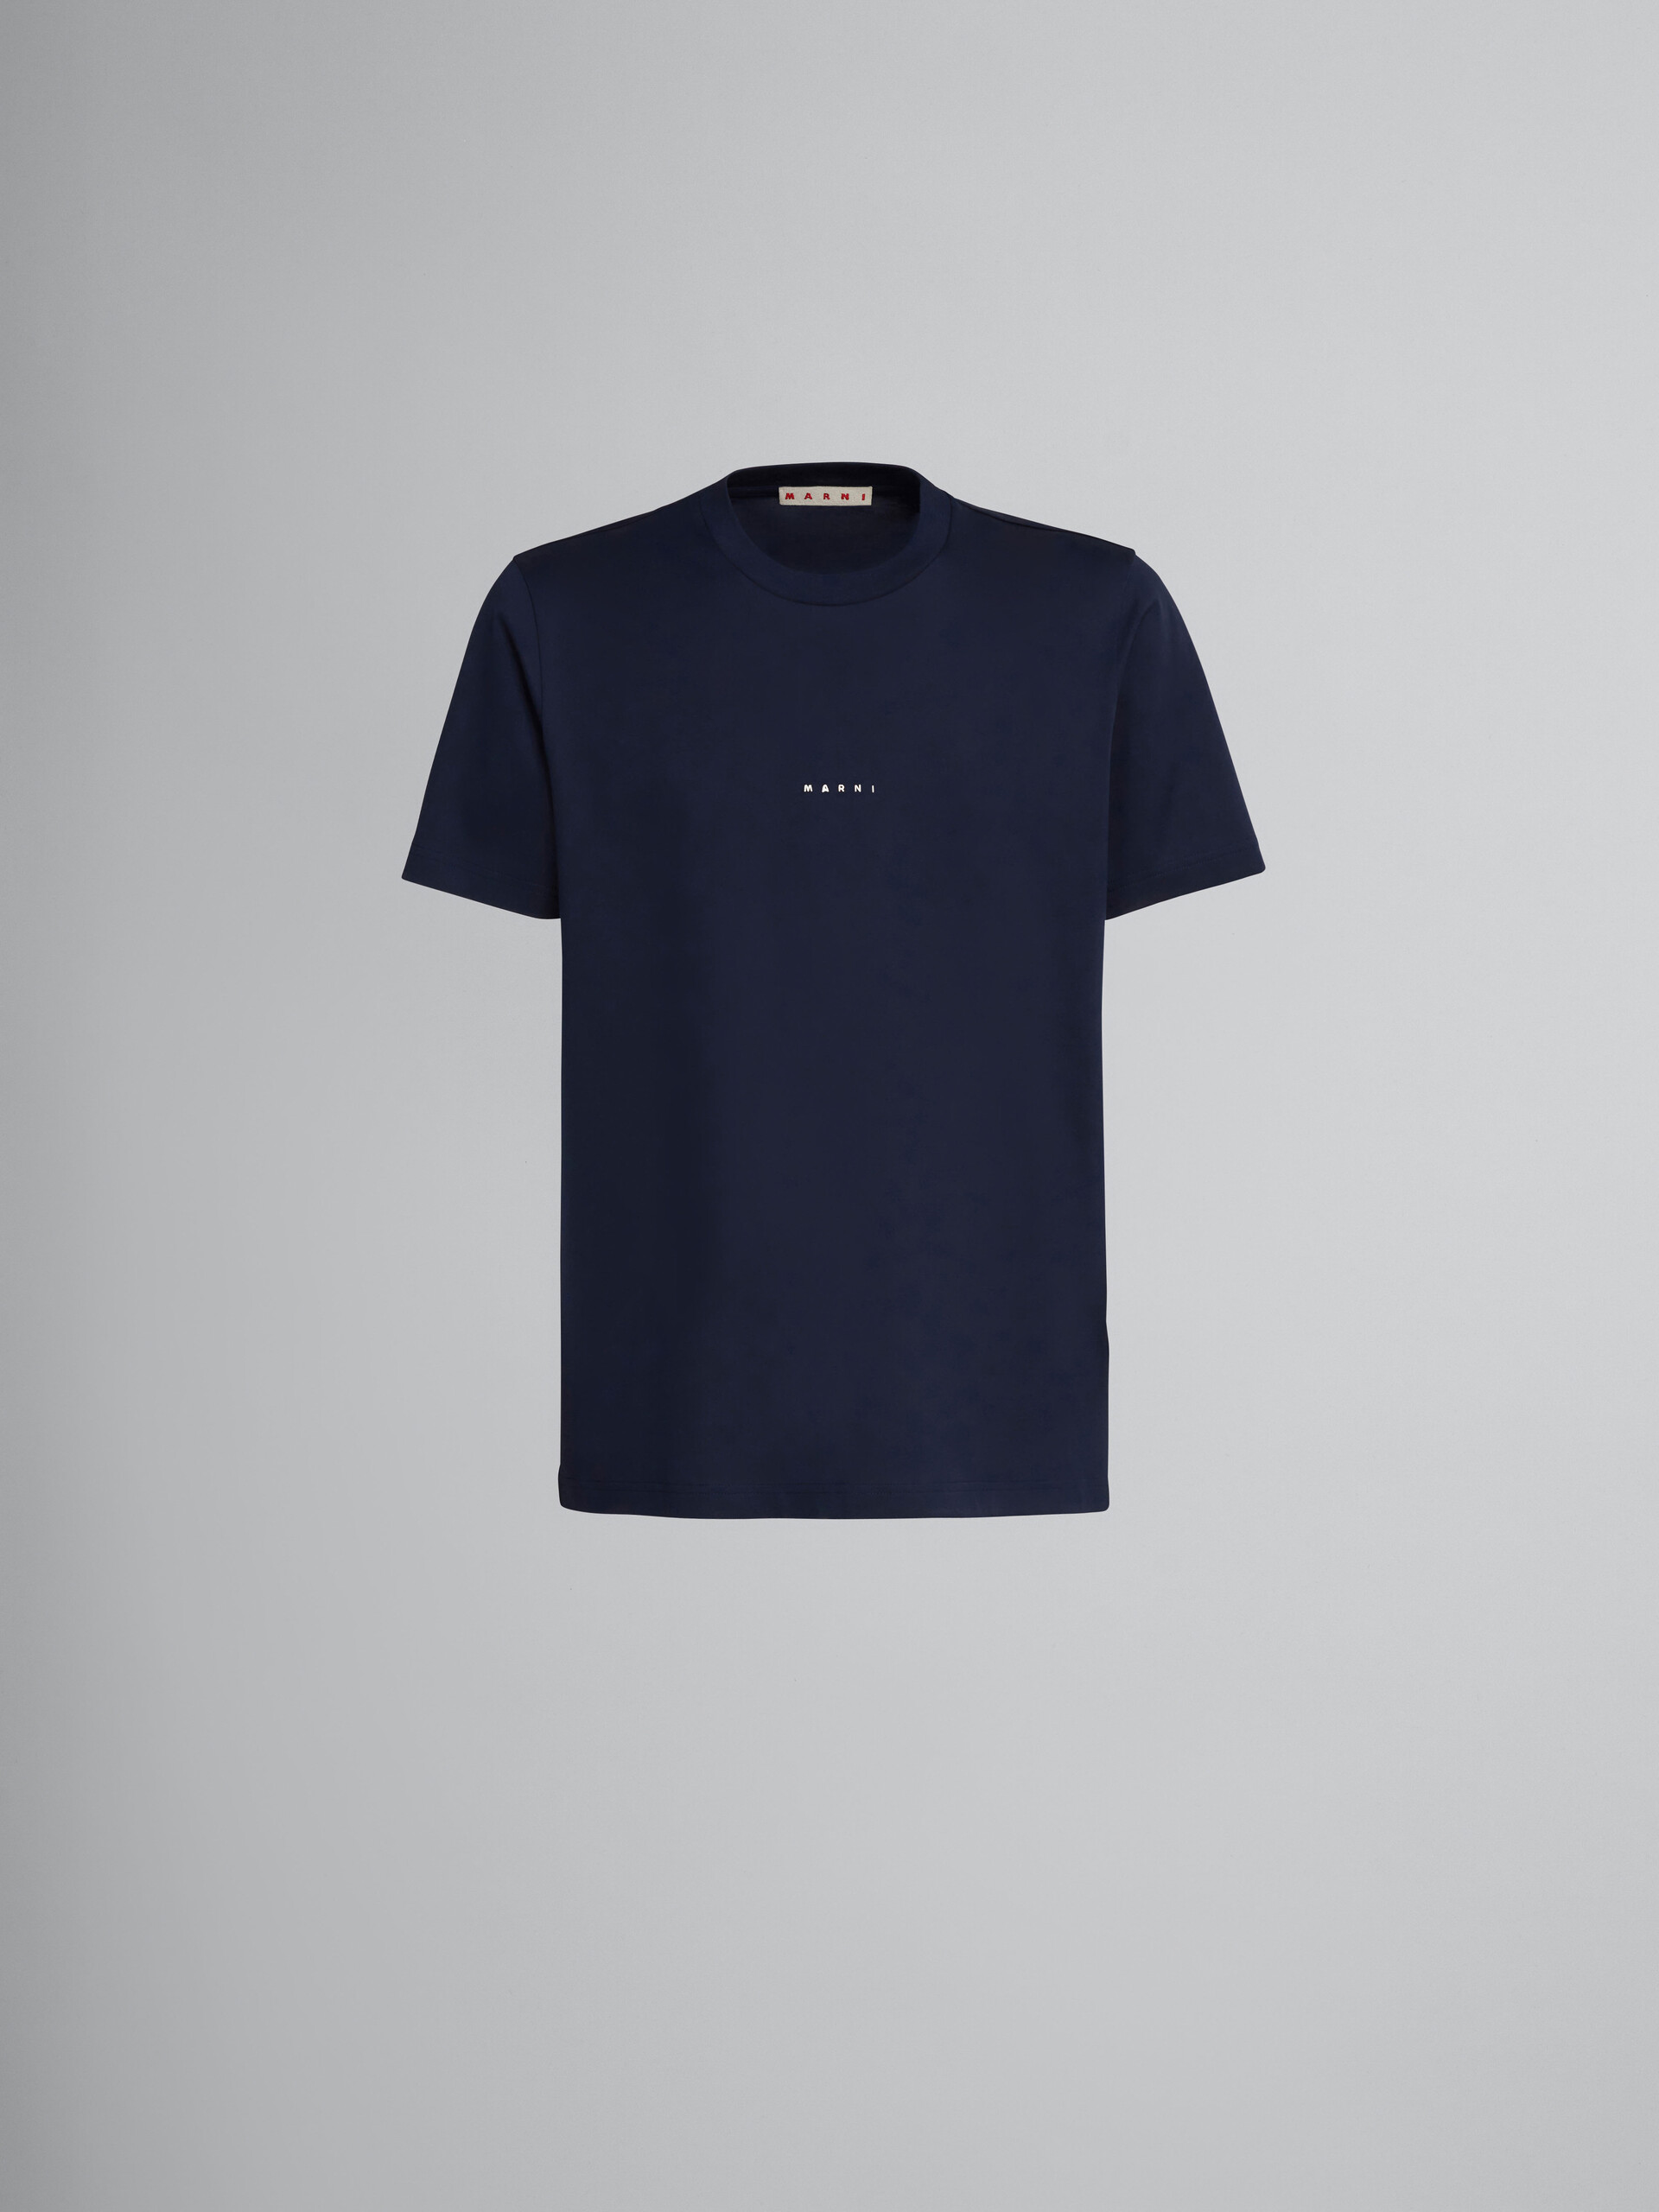 ダークブルー ロゴ入り オーガニックコットン製Tシャツ - Tシャツ - Image 1